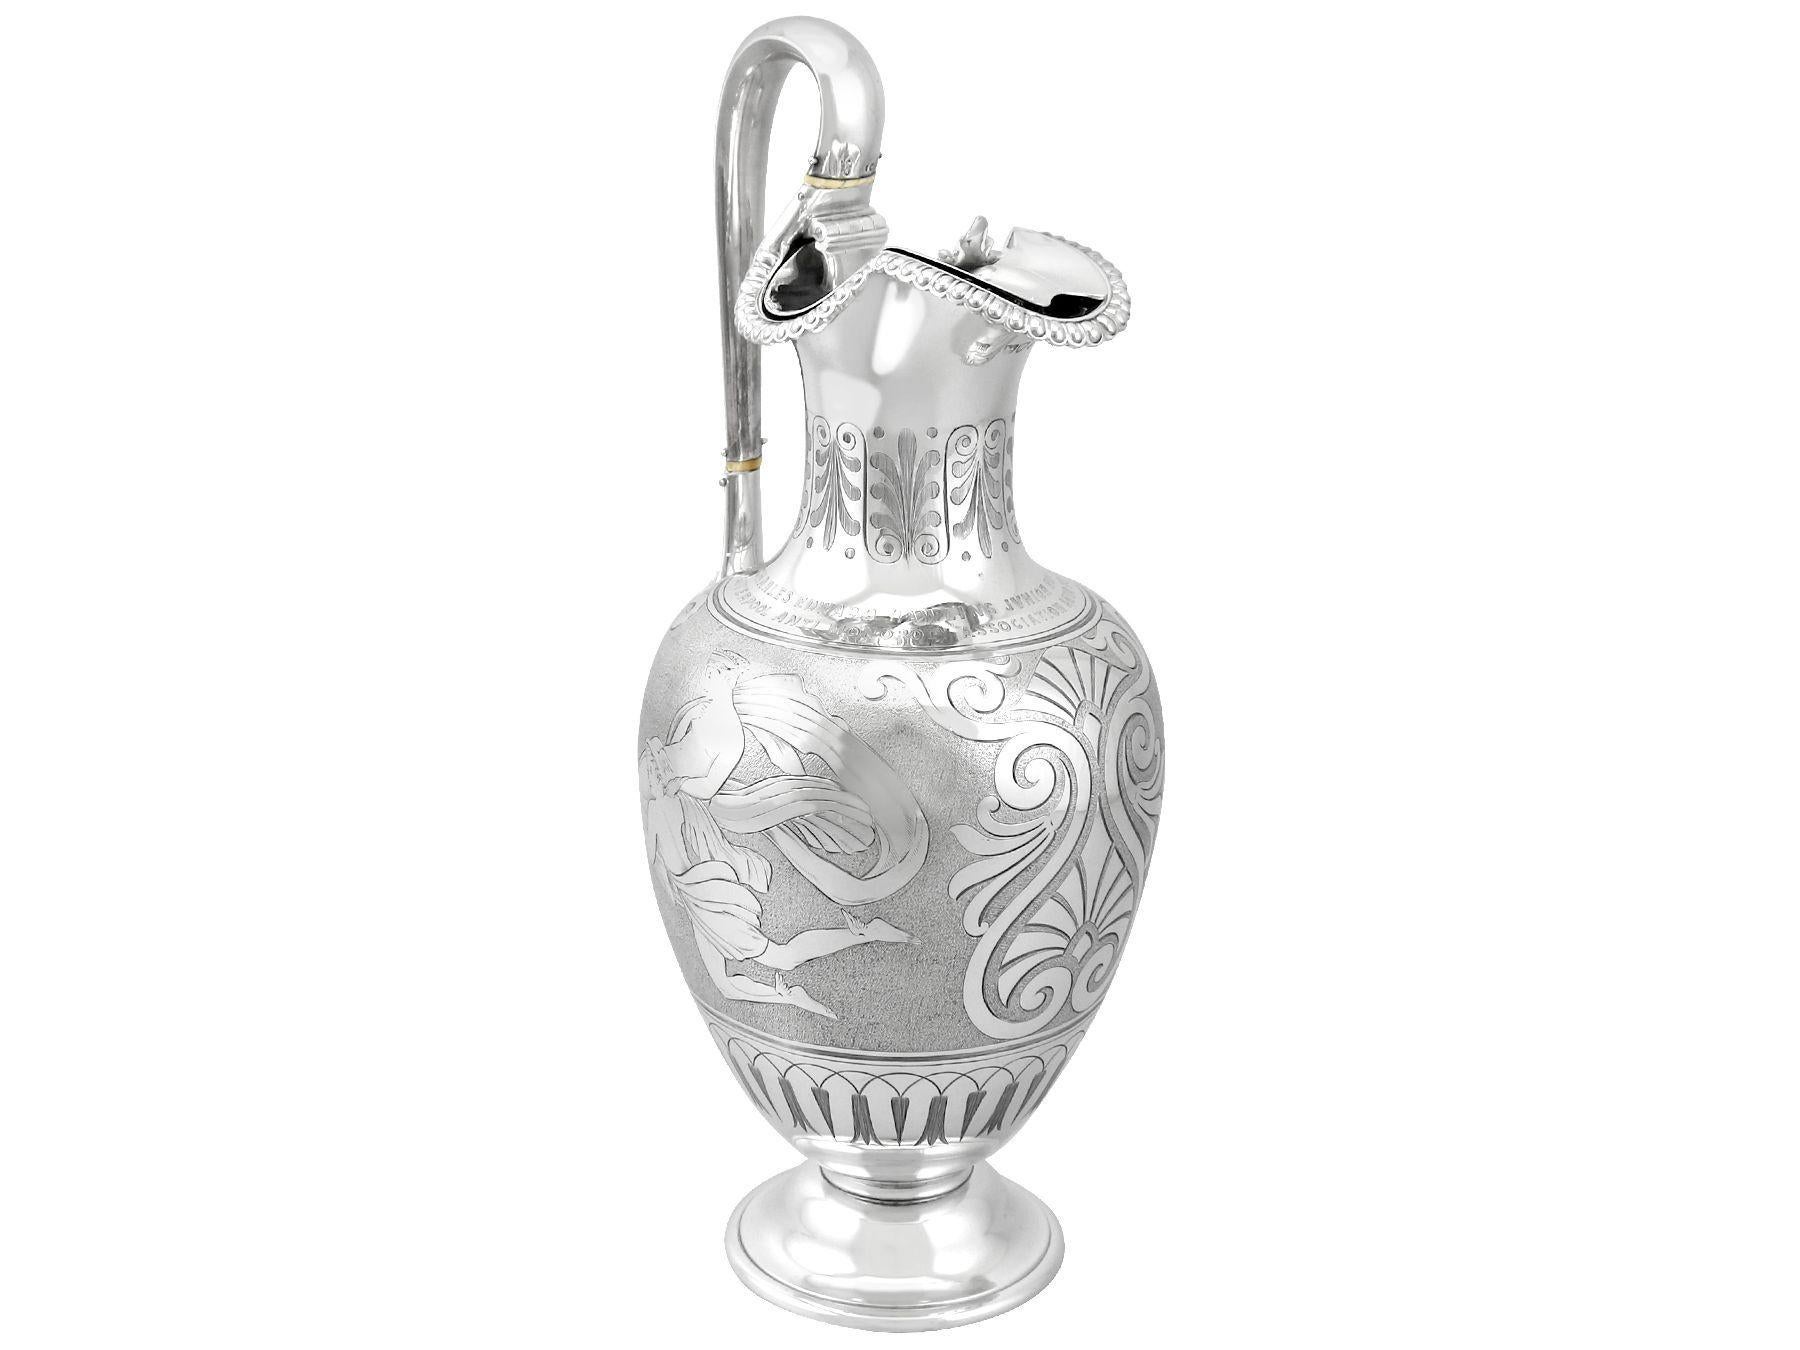 Eine außergewöhnliche, feine und beeindruckende, antike viktorianische Sterling Silber Wasserkrug / Krug; Teil unserer antiken Esszimmer Silberwaren Sammlung.

Dieser außergewöhnliche Wasserkrug aus Sterlingsilber hat eine balusterförmige Form auf